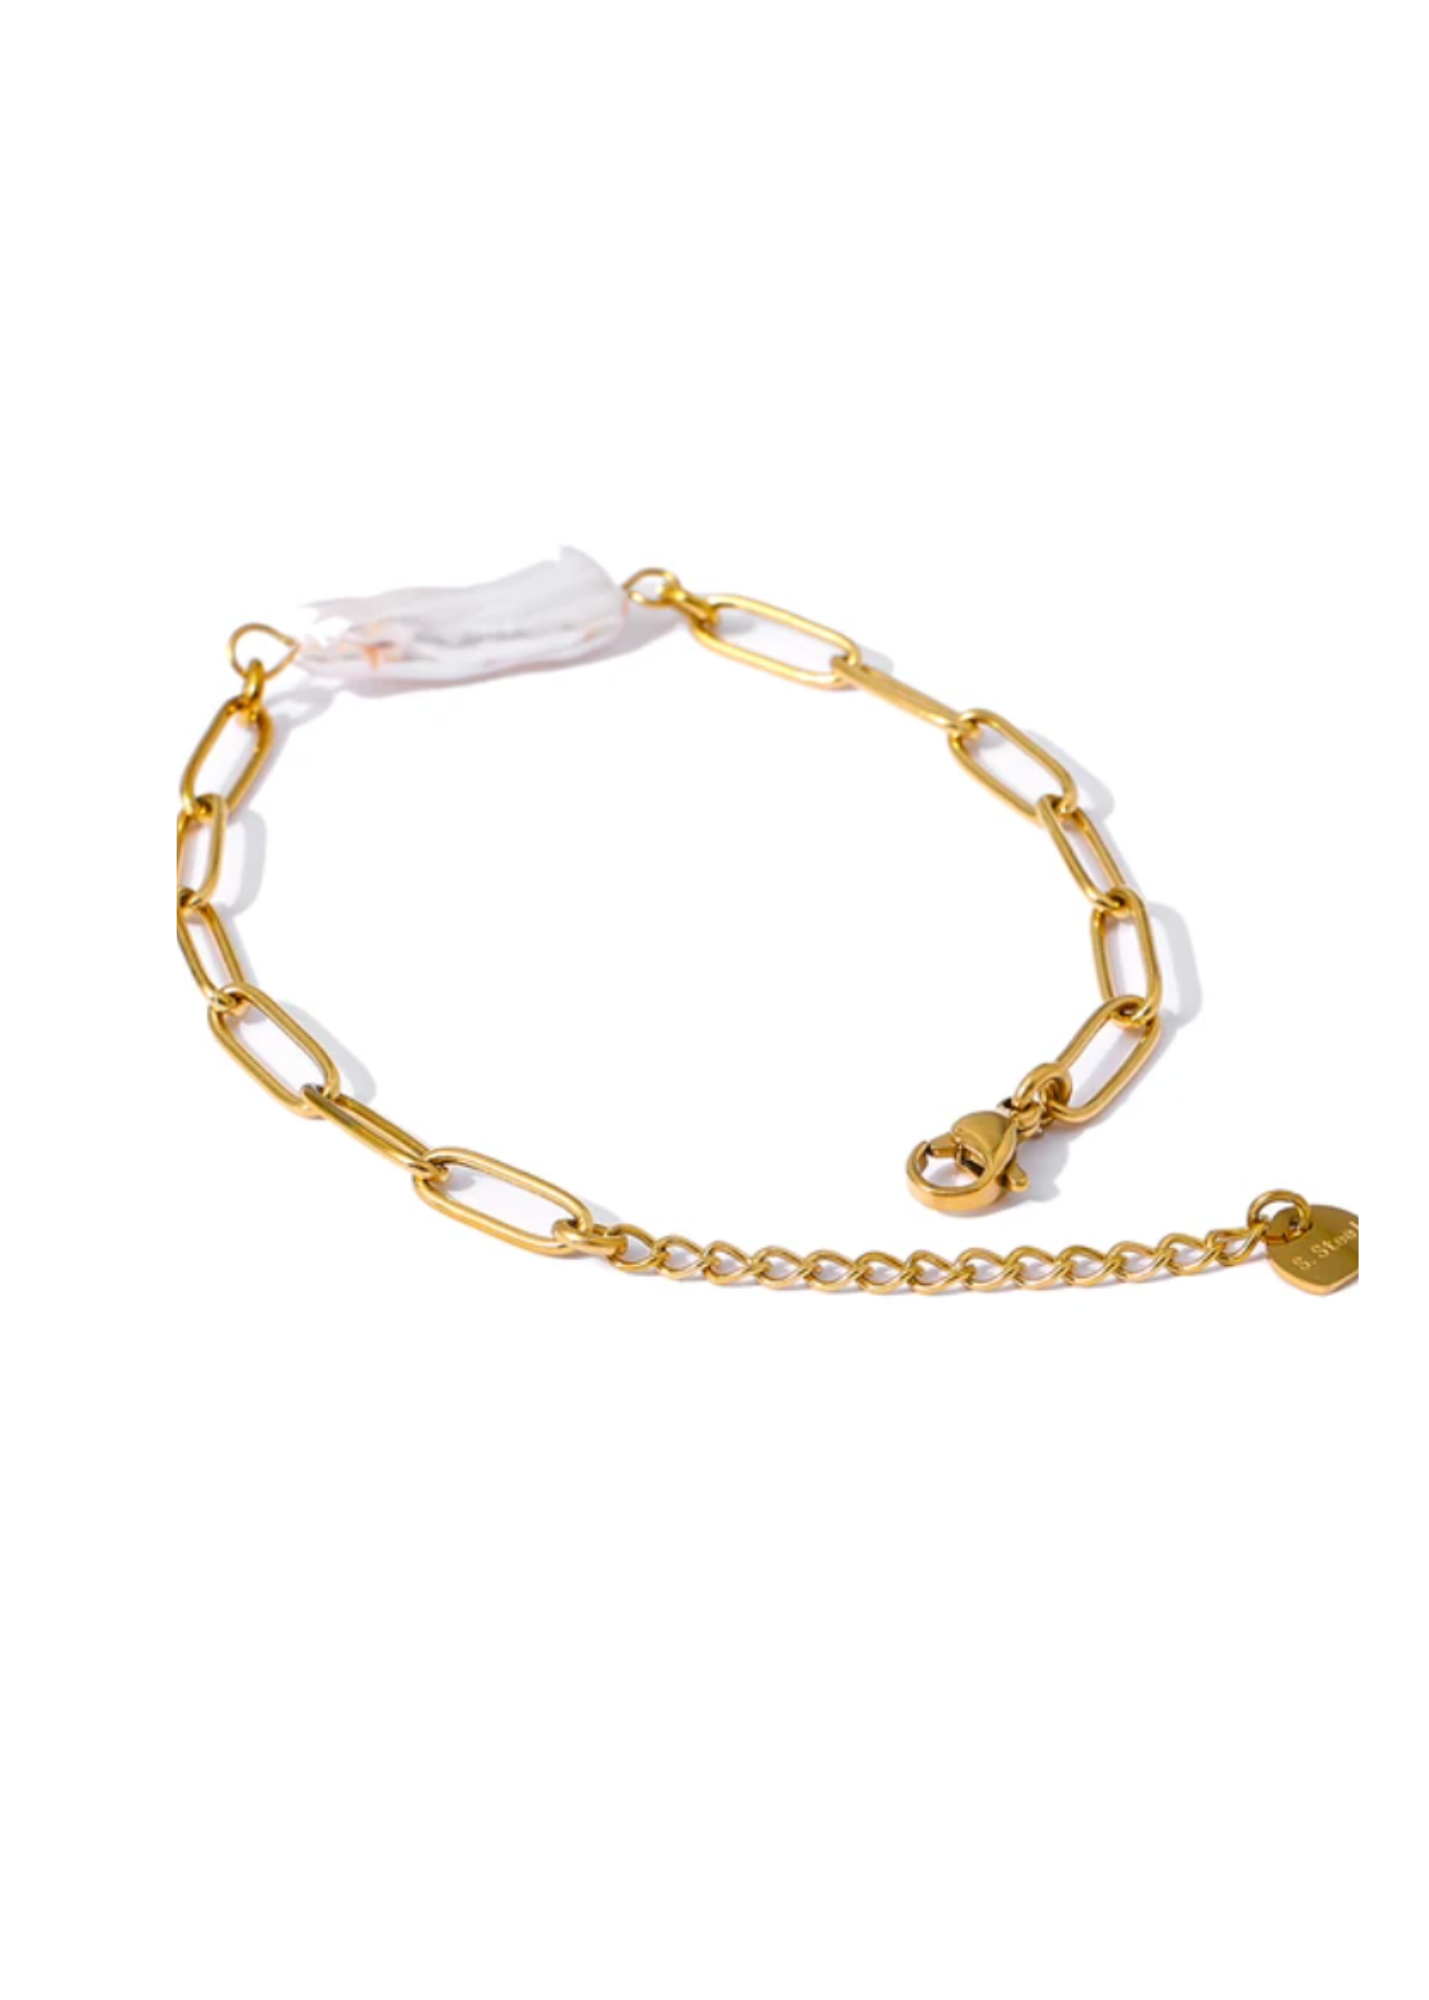 The Korfu Pearl Bracelet